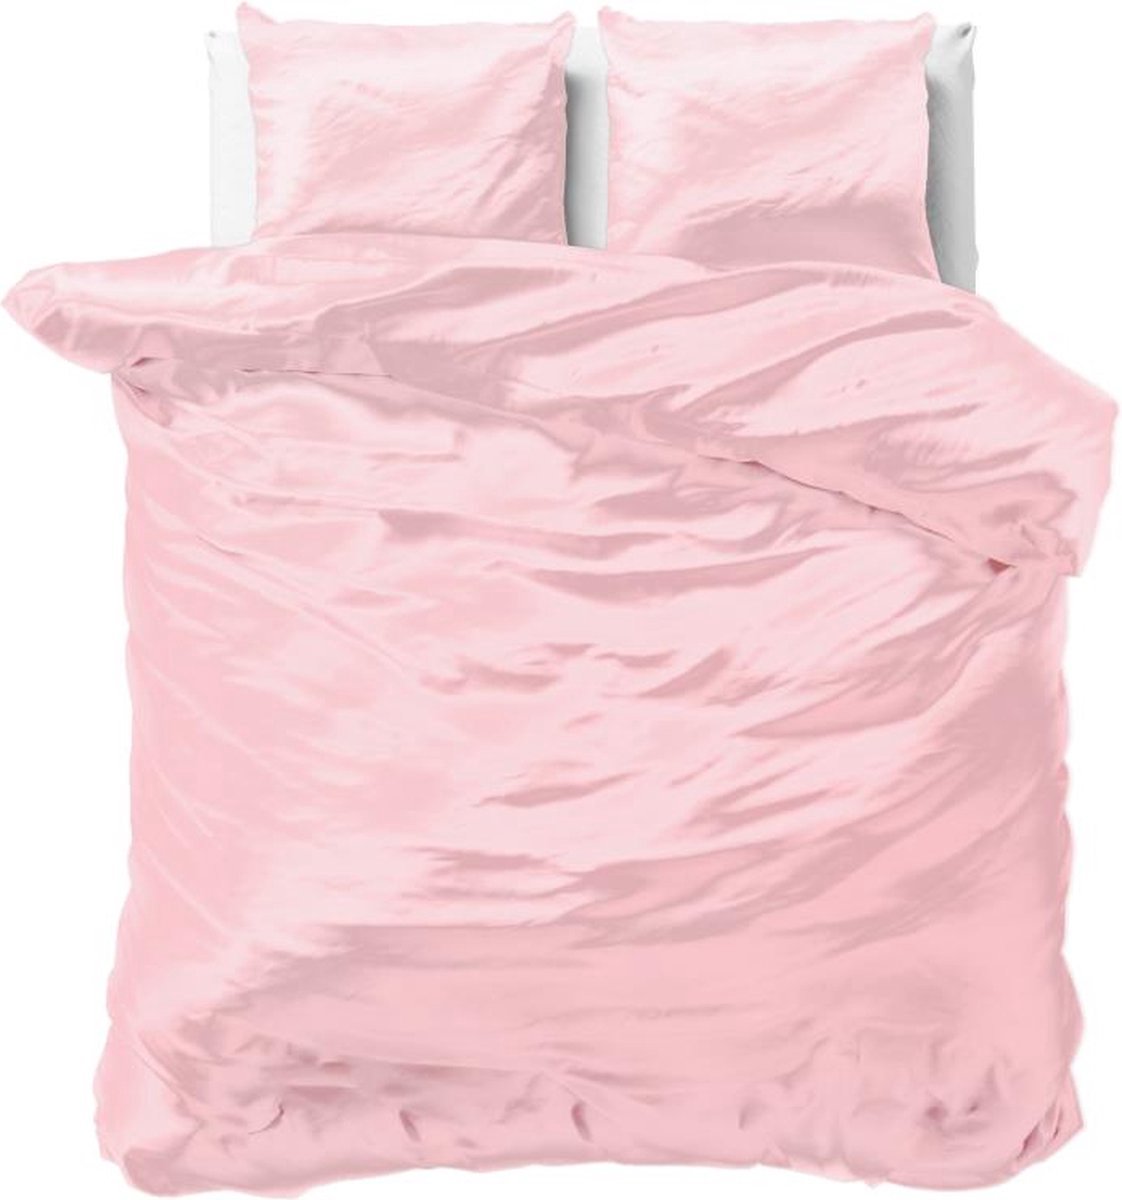 Luxe glans satijn dekbedovertrek uni roze - eenpersoons (140x200/220) - tegen acne, onzuiverheden en warrig haar - heerlijk zacht en soepel